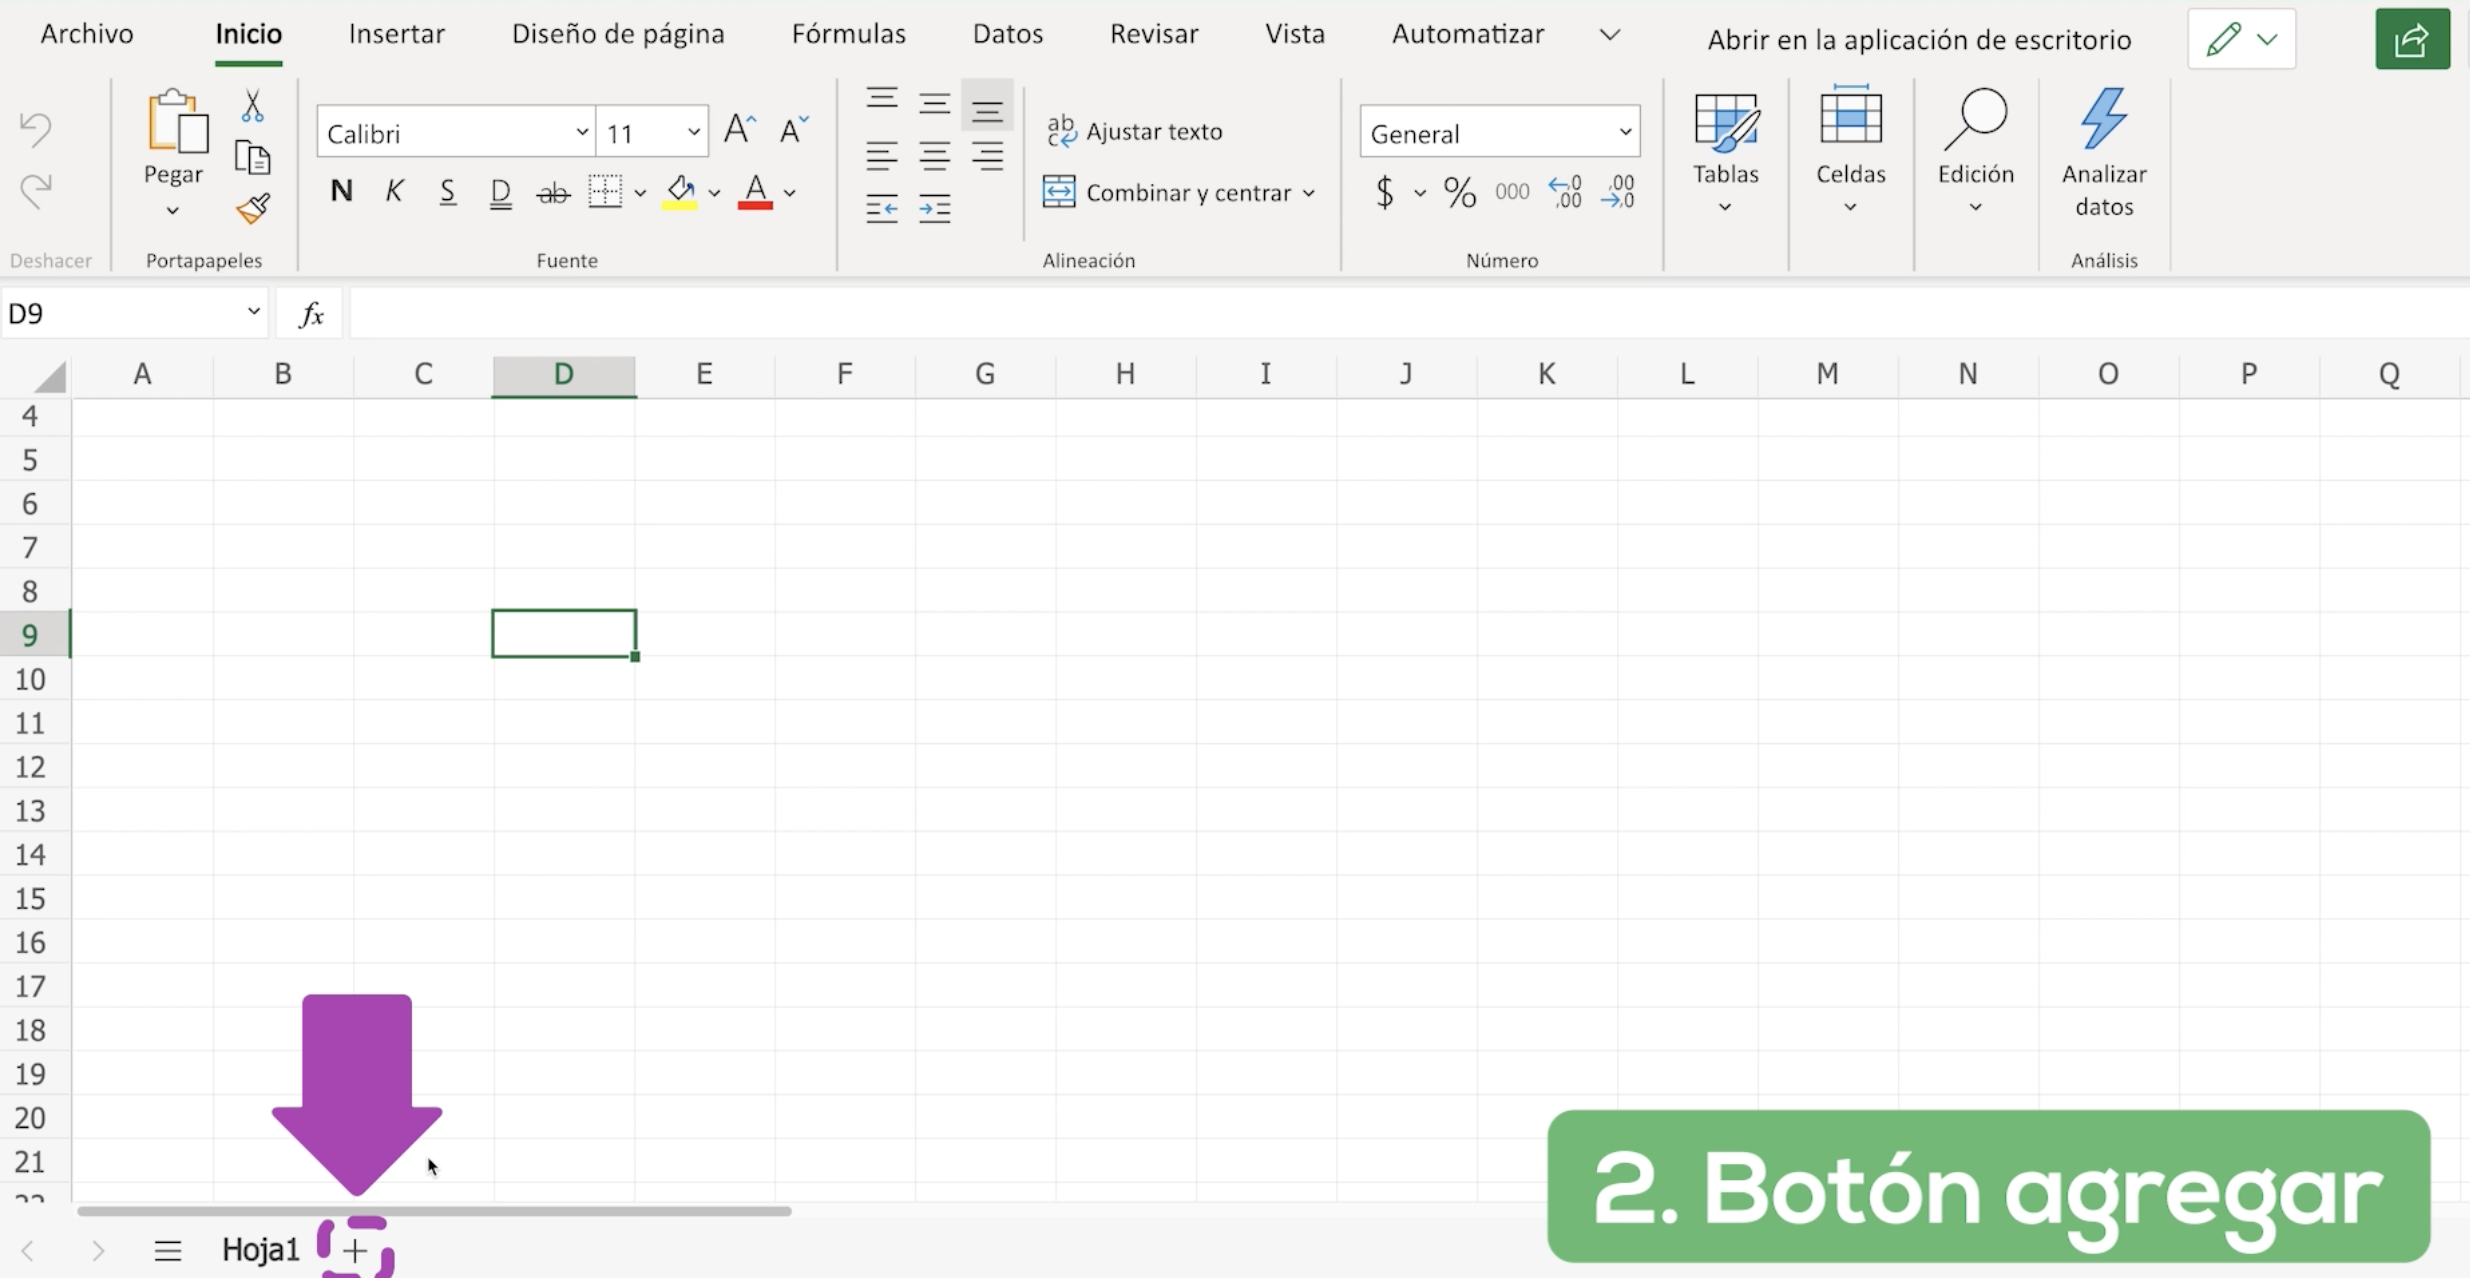 Tienes otra opción para crear una hoja de cálculo,  ubícate en la parte inferior izquierda de la ventana de Excel y haz clic en el símbolo + que se encuentra al lado derecho de Hoja 1. Automáticamente se creará una hoja de cálculo nueva.